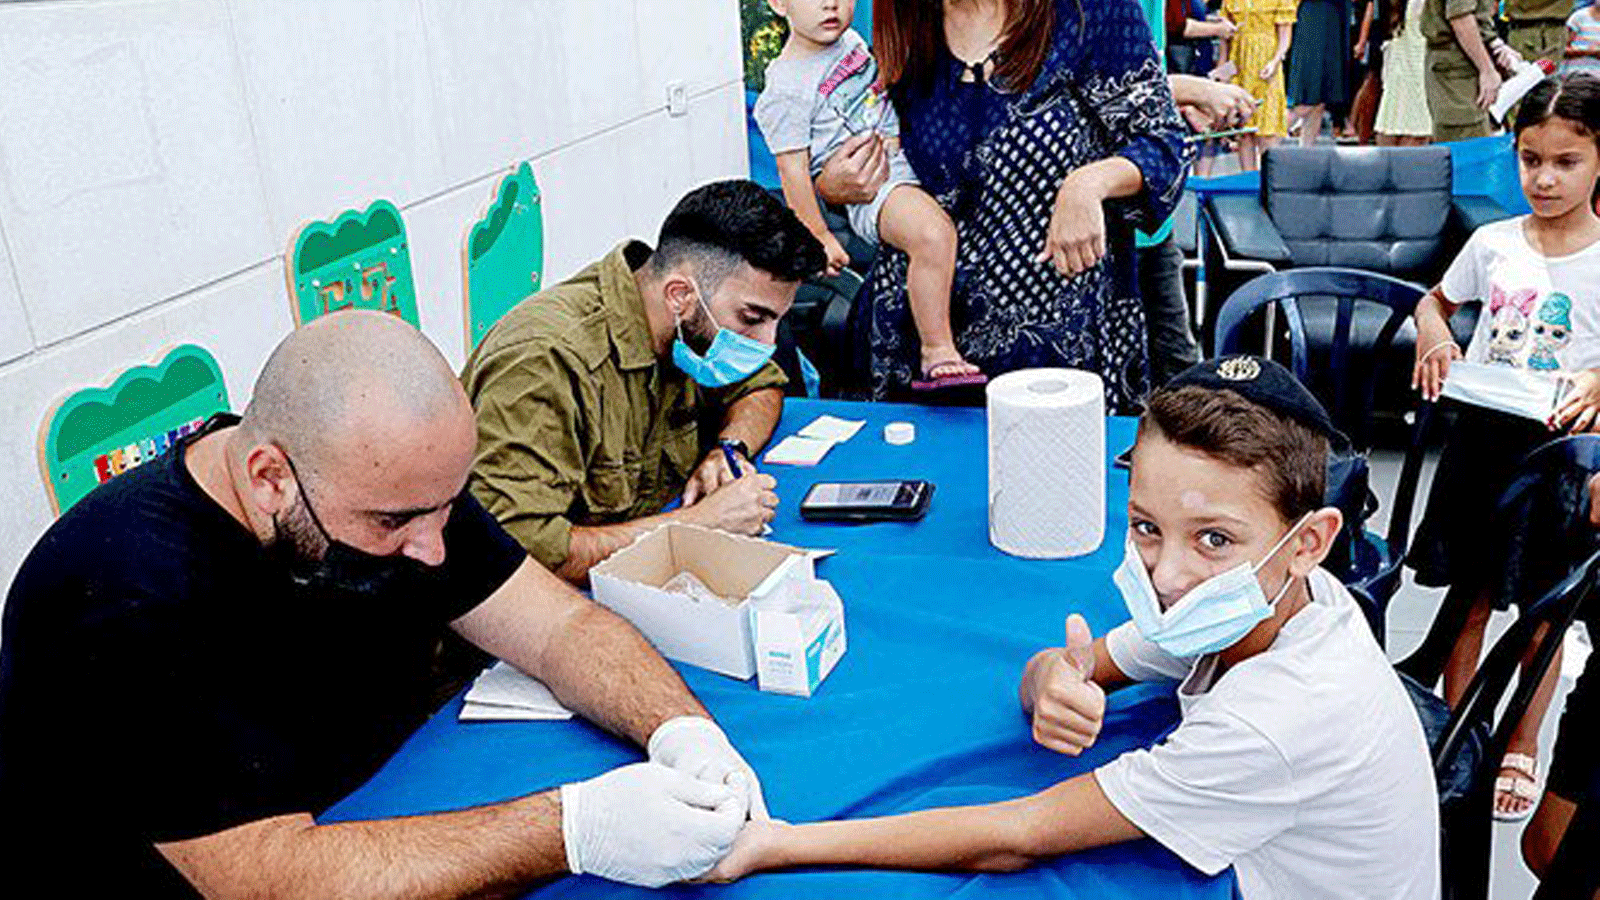 الأطفال يخضعون لاختبار الأجسام المضادة لـ COVID-19 في مدينة نتانيا الساحلية الإسرائيلية يوم الأحد قبل بدء العام الدراسي الجديد